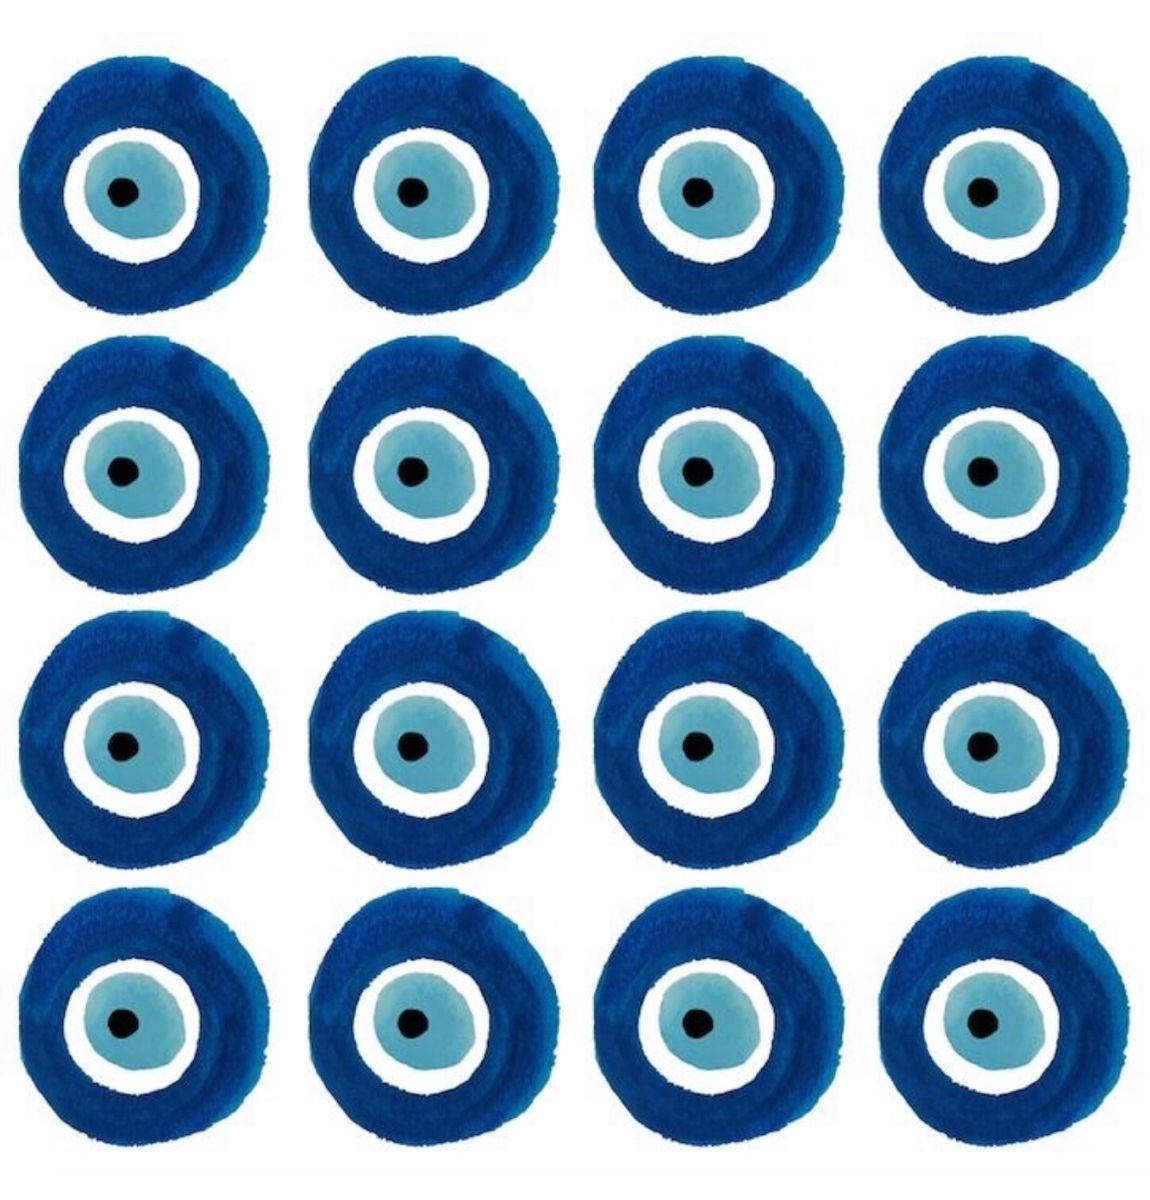 Overcoming Fear - Evil Eye Pattern Set Wallpaper